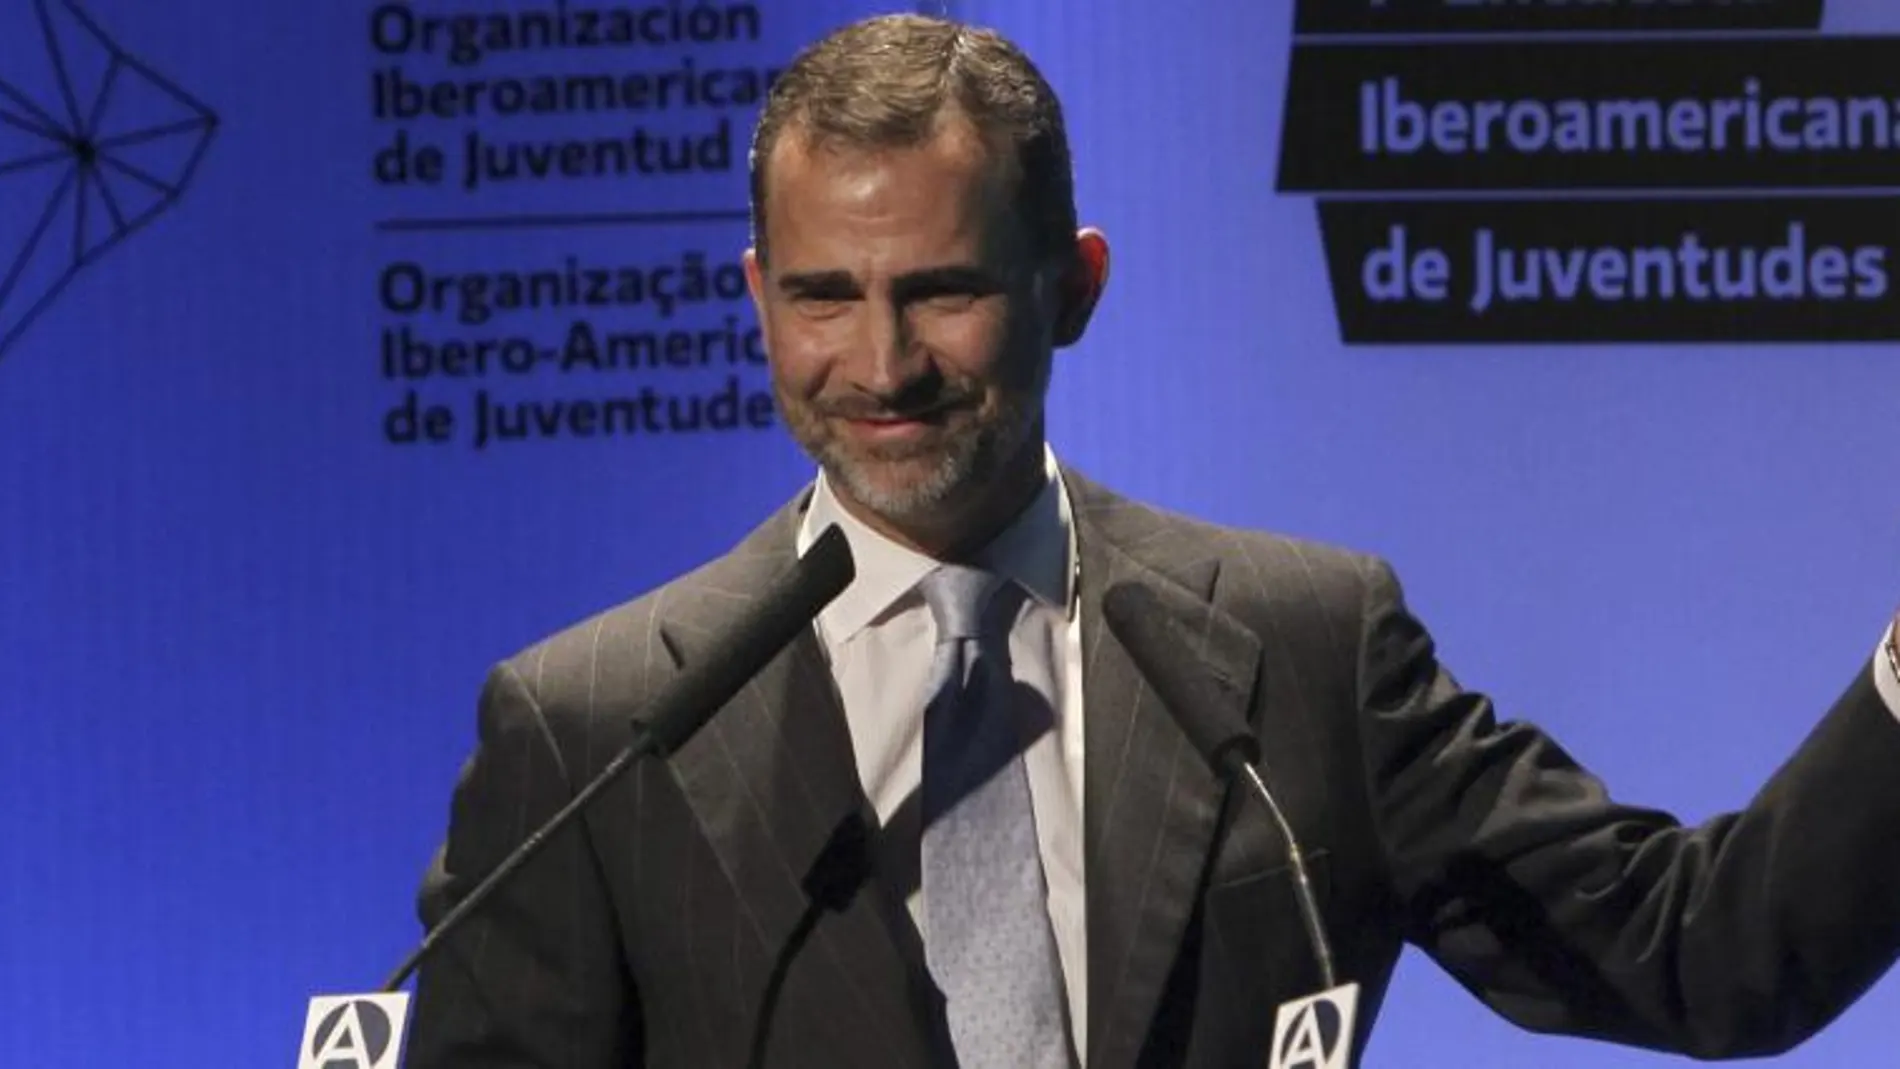 El príncipe Felipe durante su intervención en la presentación de la primera macroencuesta iberoamericana sobre juventud